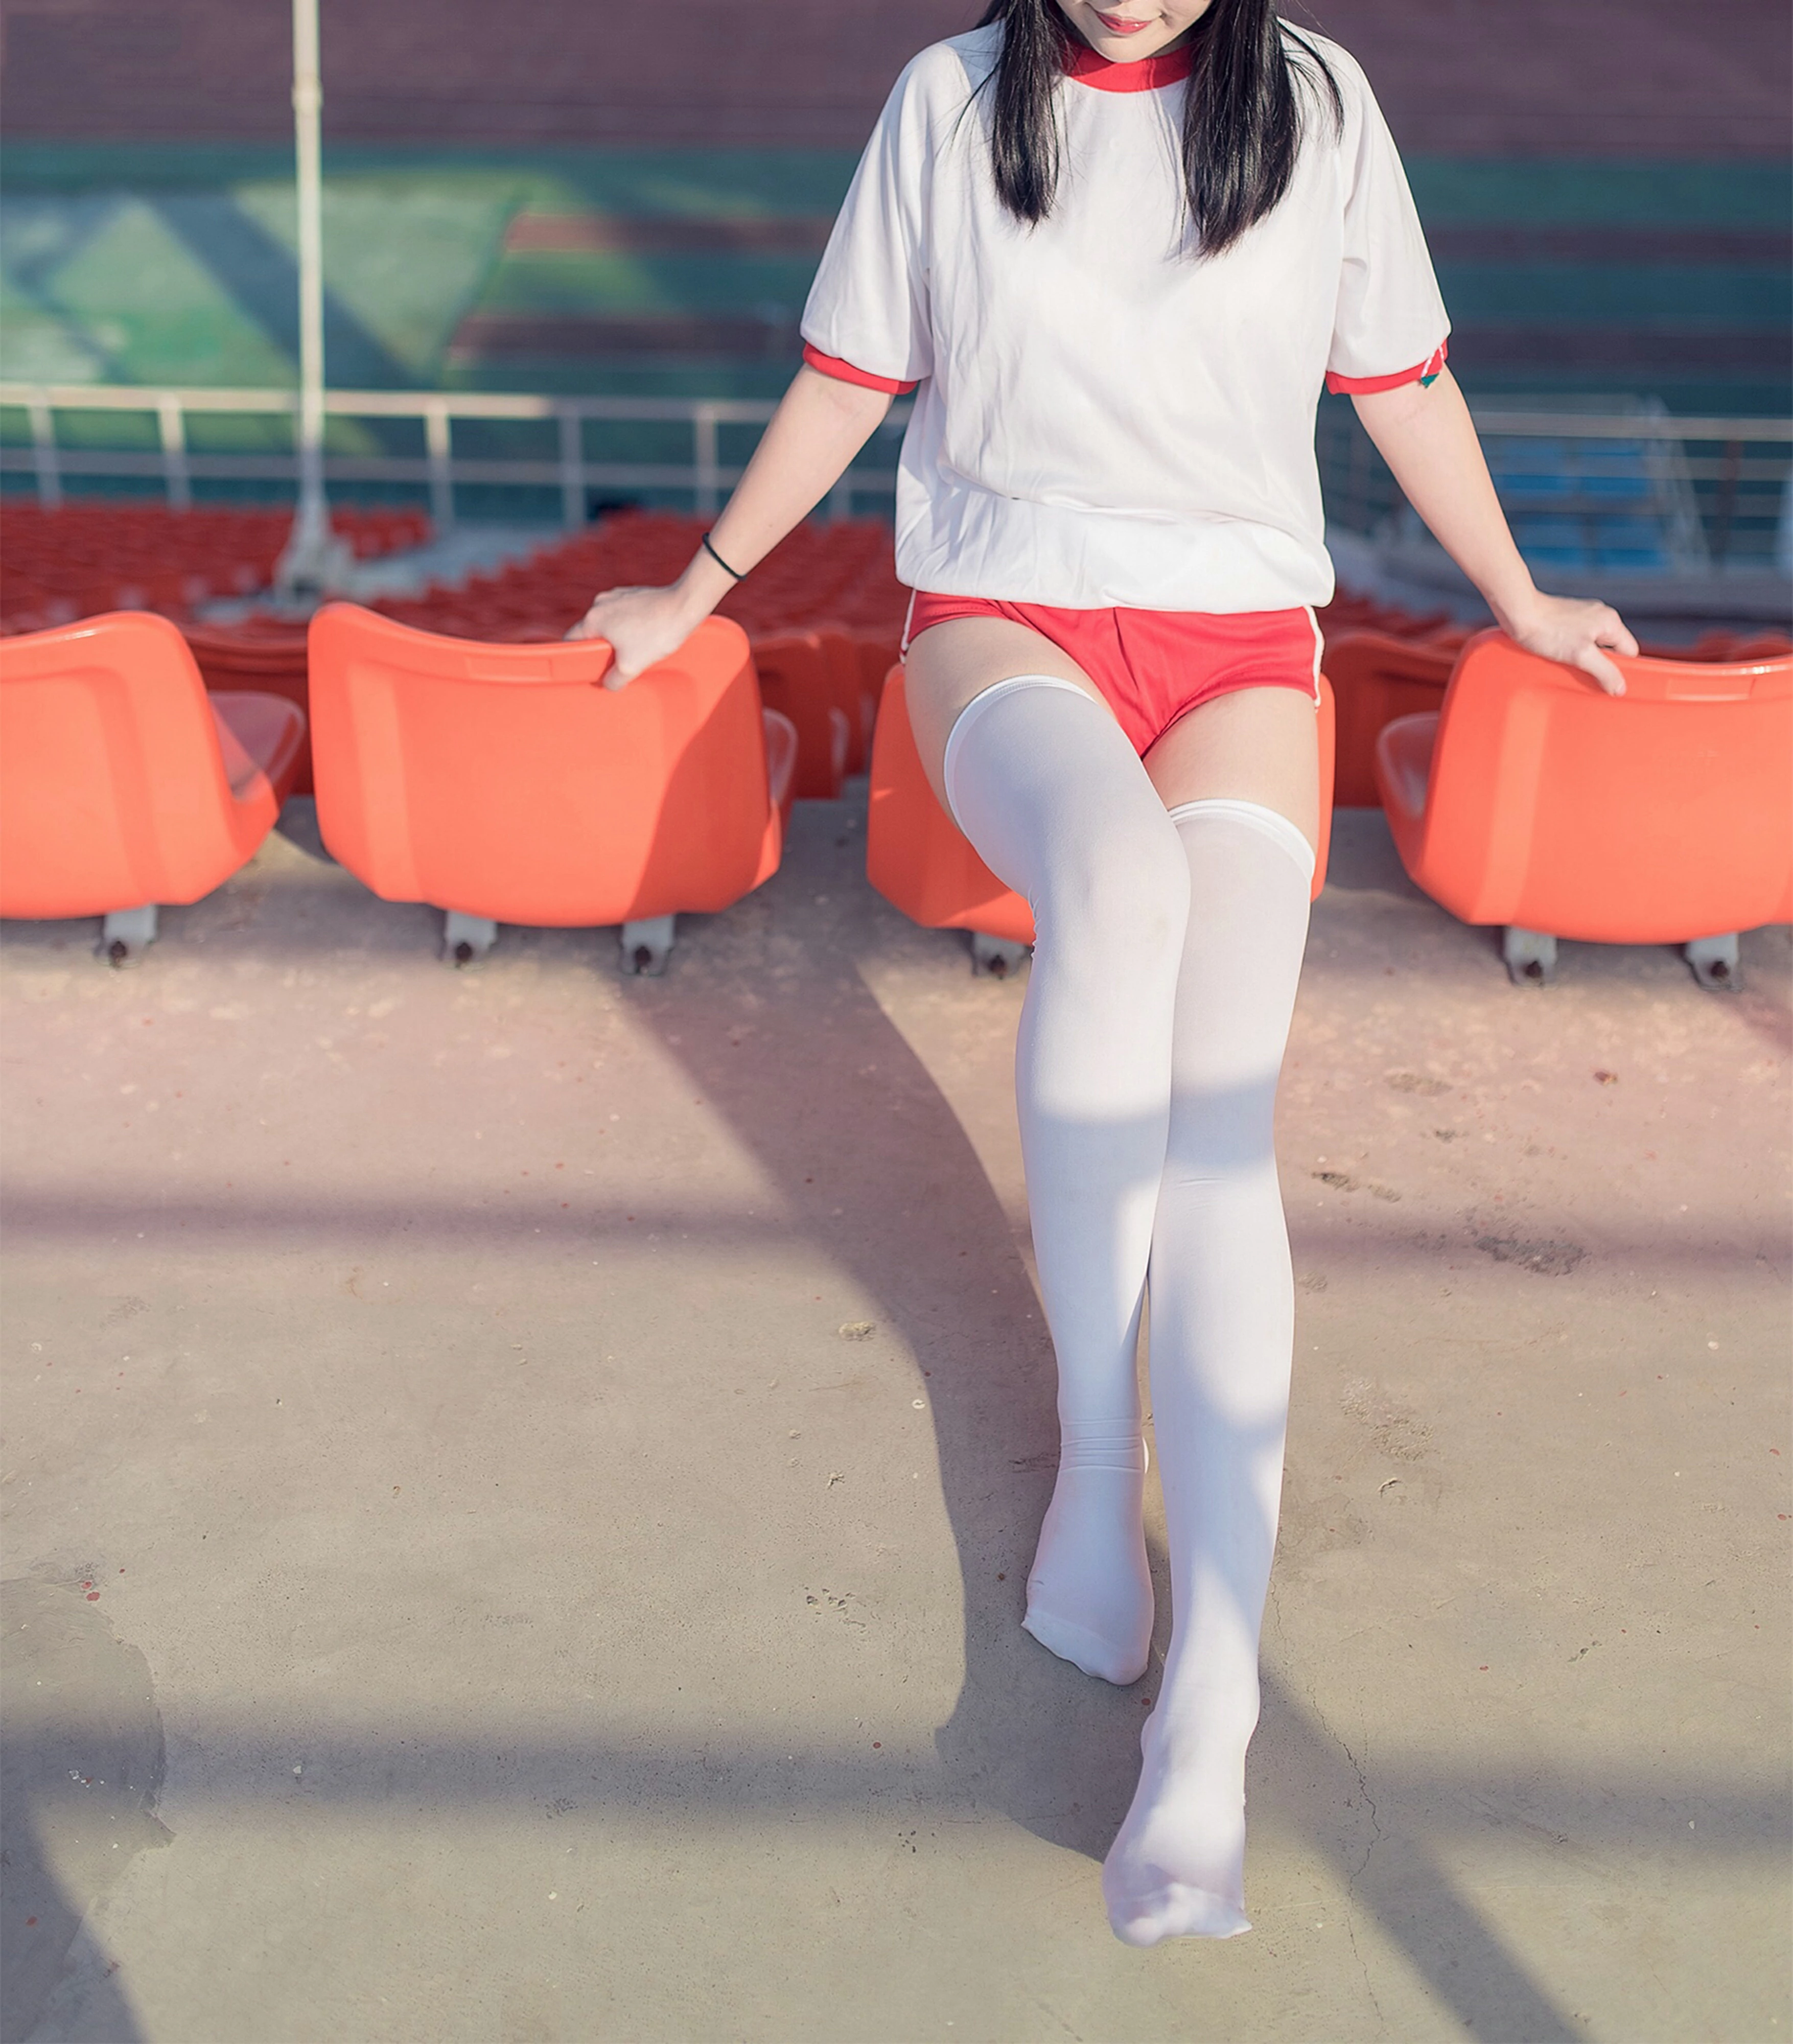 [风之领域]NO.112 性感小萝莉 白色短袖与红色短裤加白色丝袜美腿私房写真集,